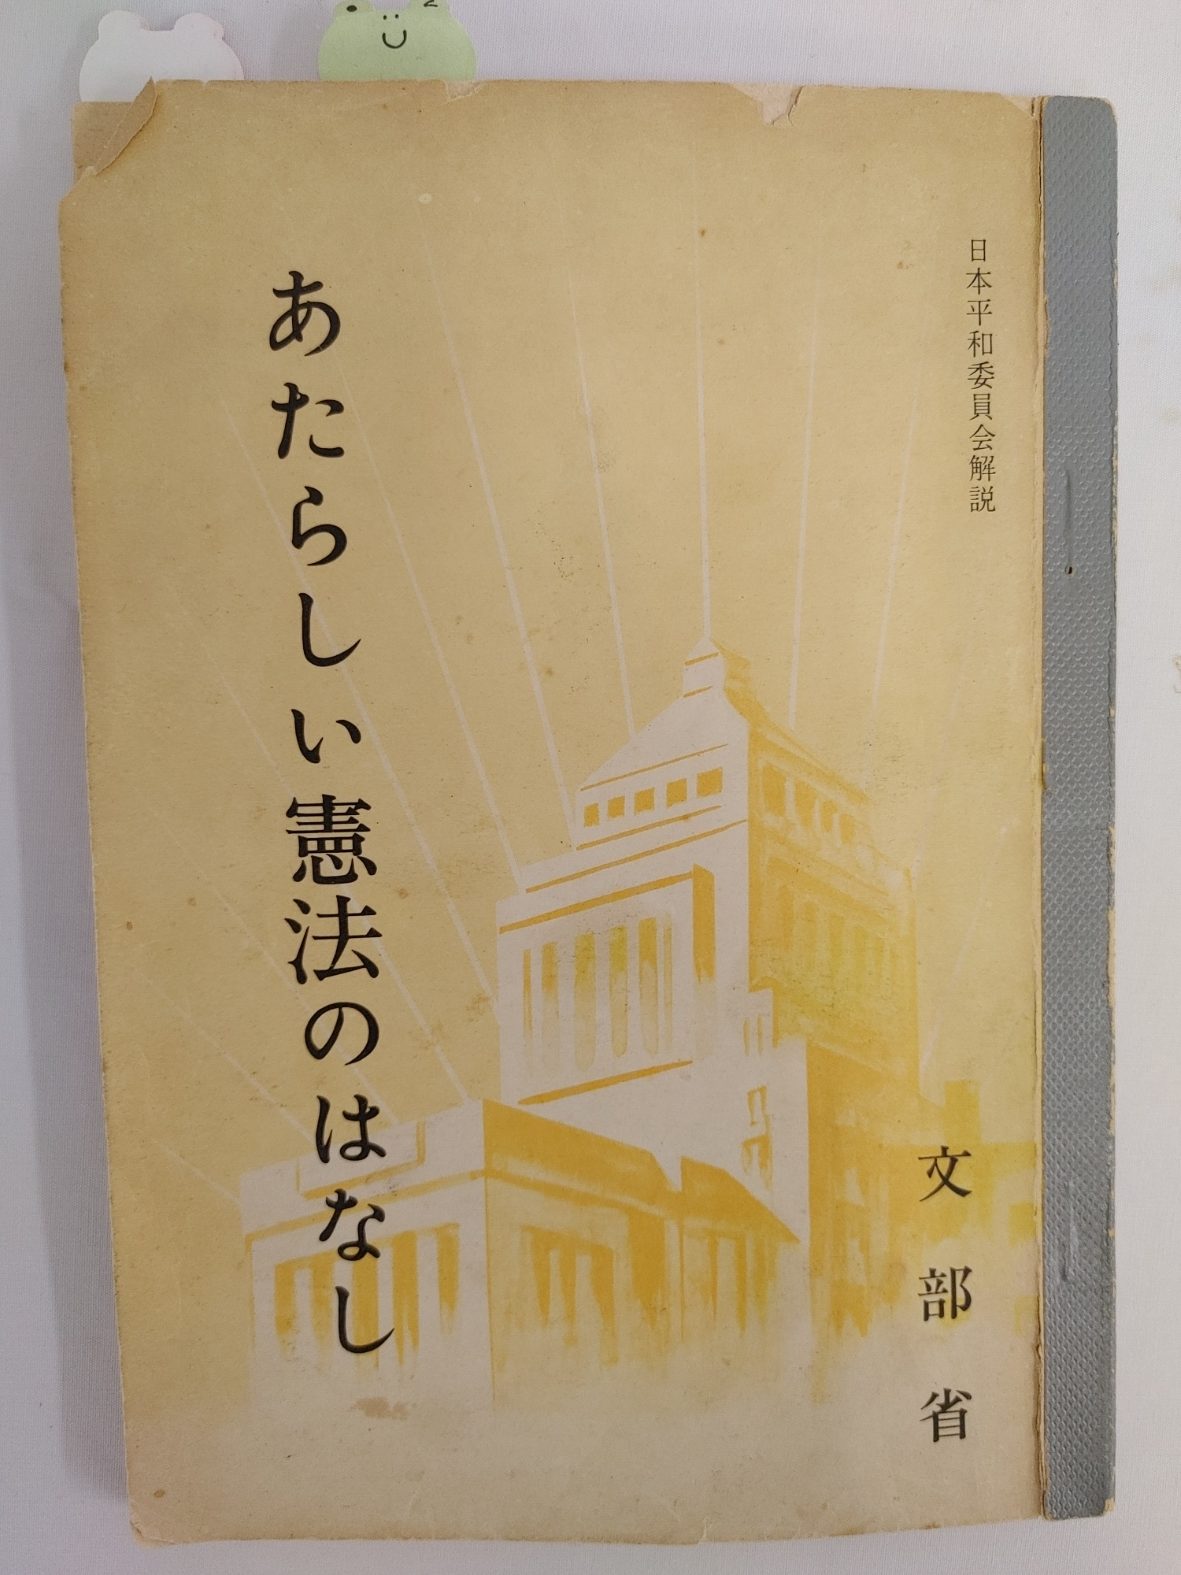 戦後の教科書「あたらしい憲法のはなし」 | 北九州平和資料館